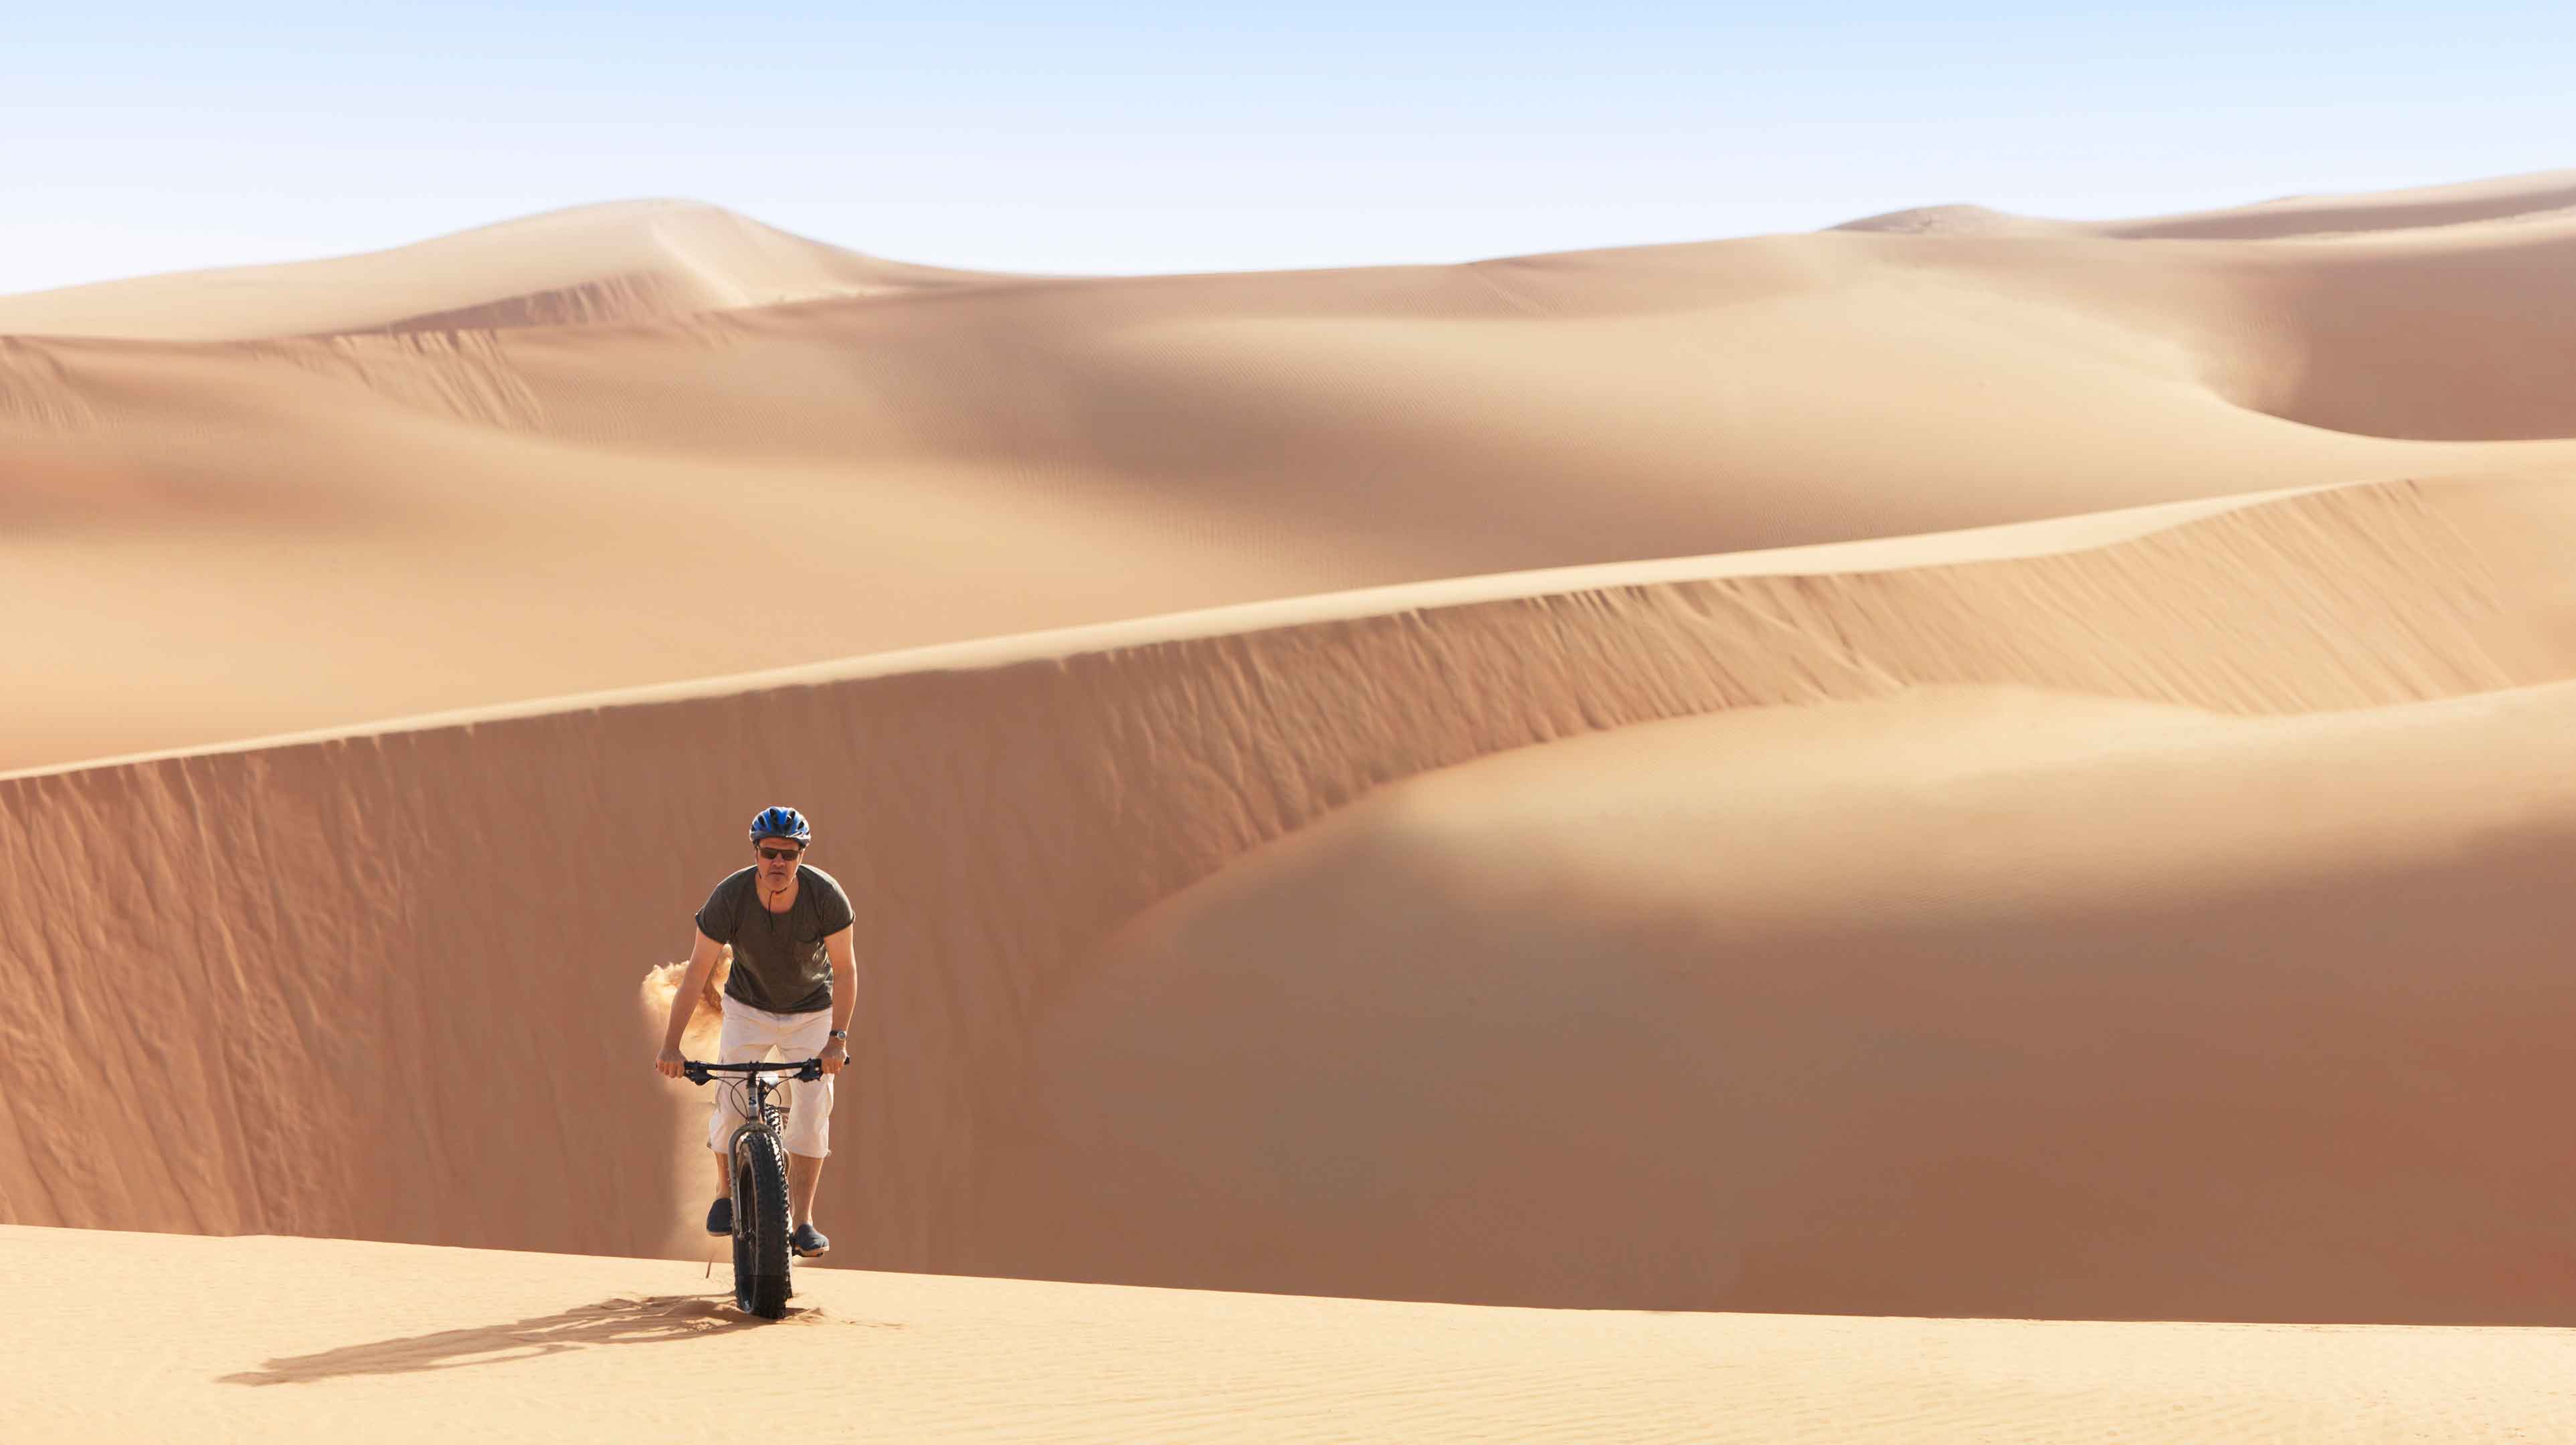 4. Descendez les plus grandes dunes de sable au monde en fatbike